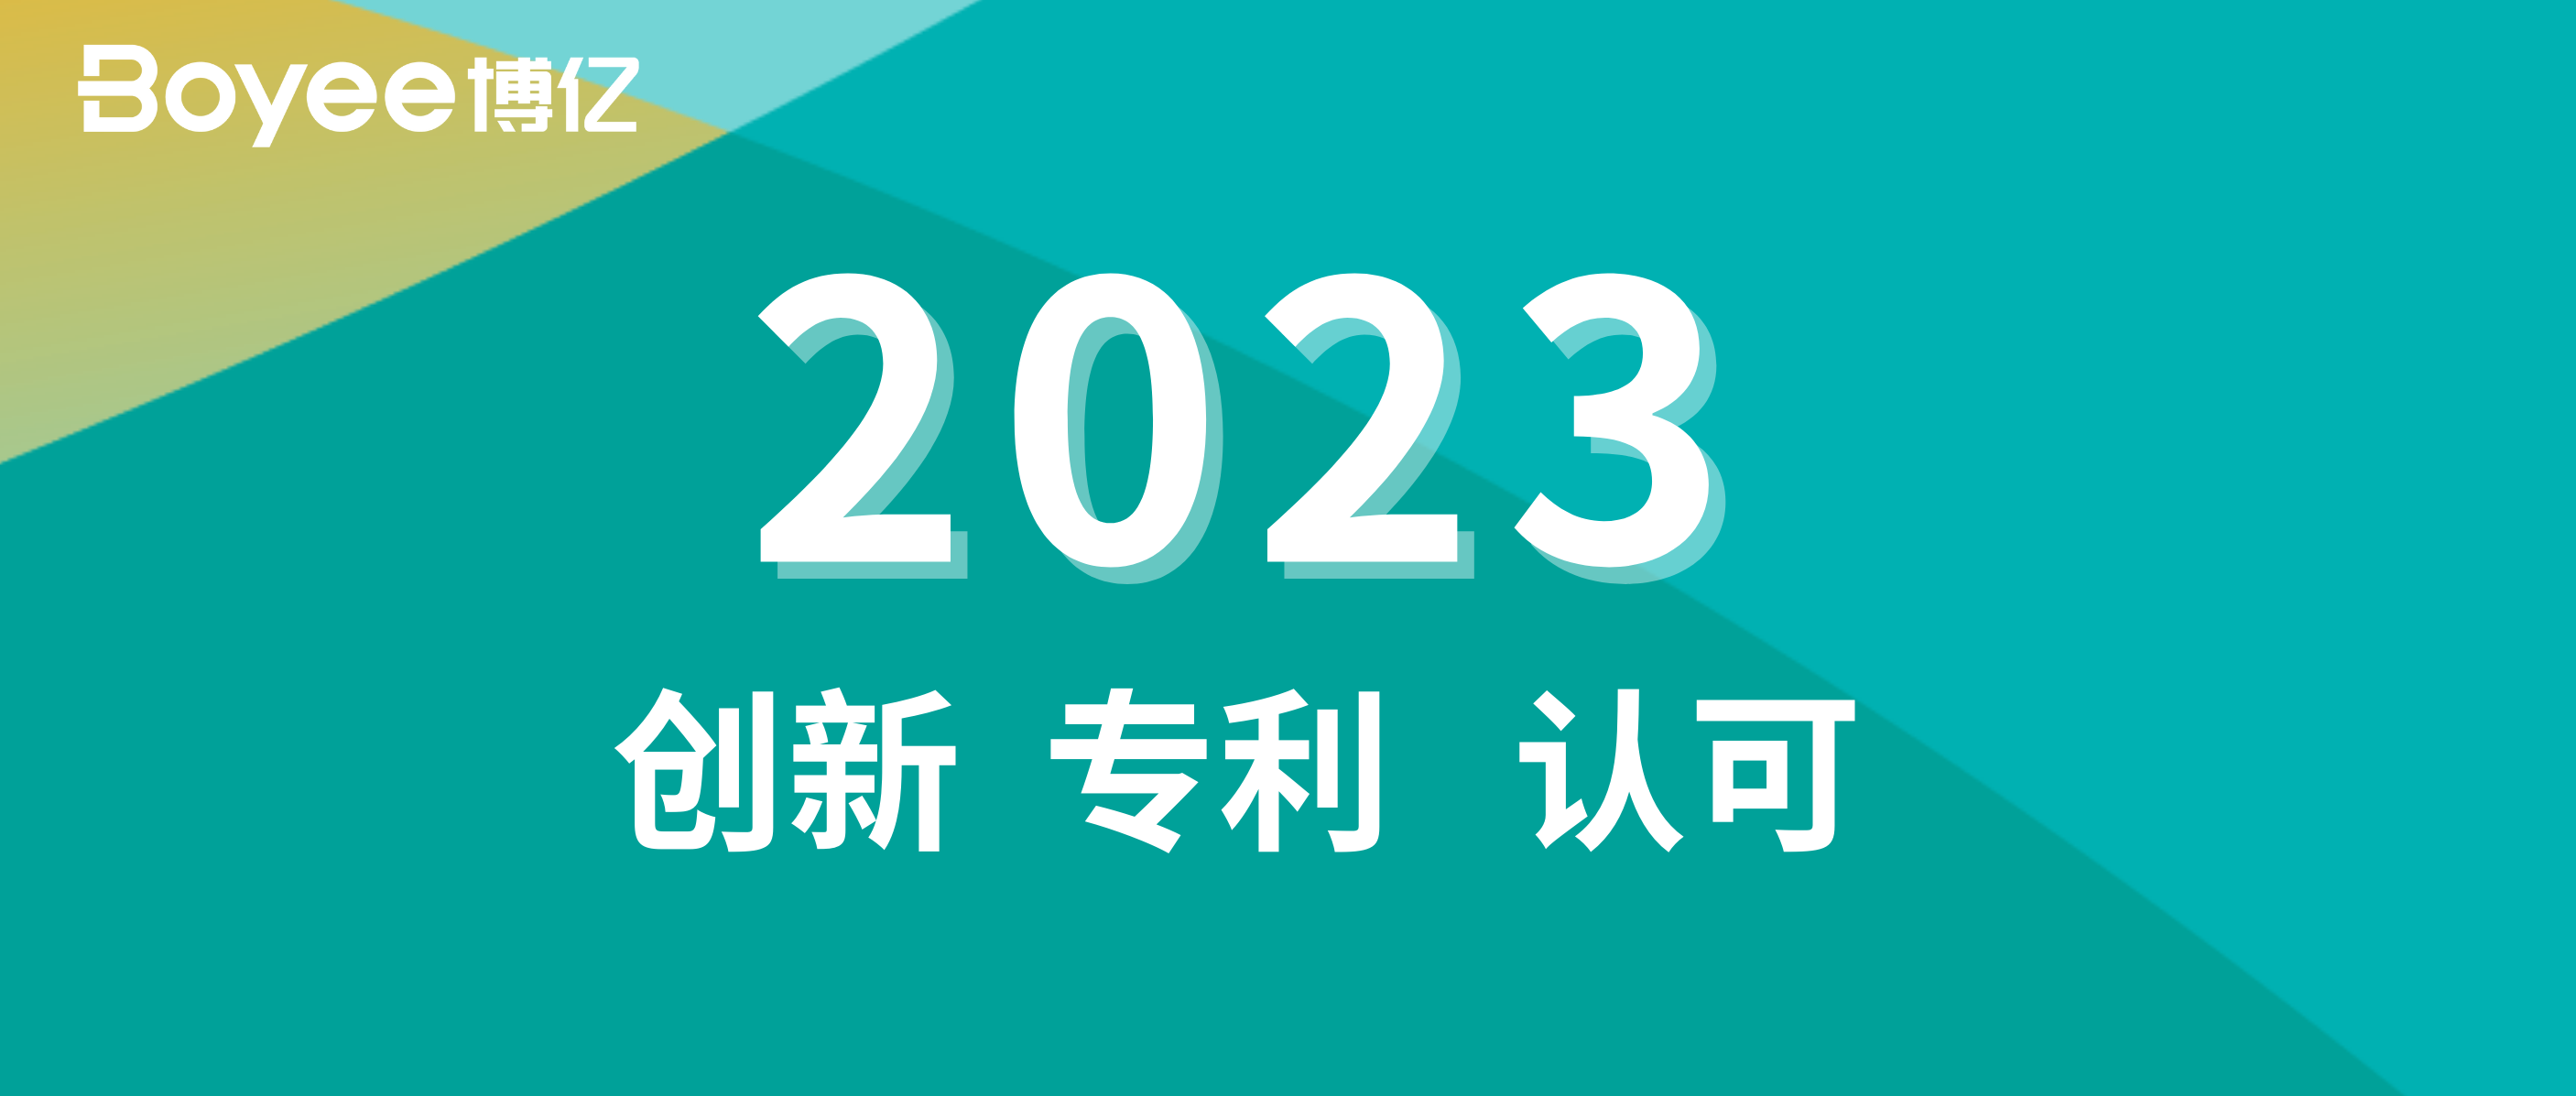 博亿2023年关键词：创新、专利与认可